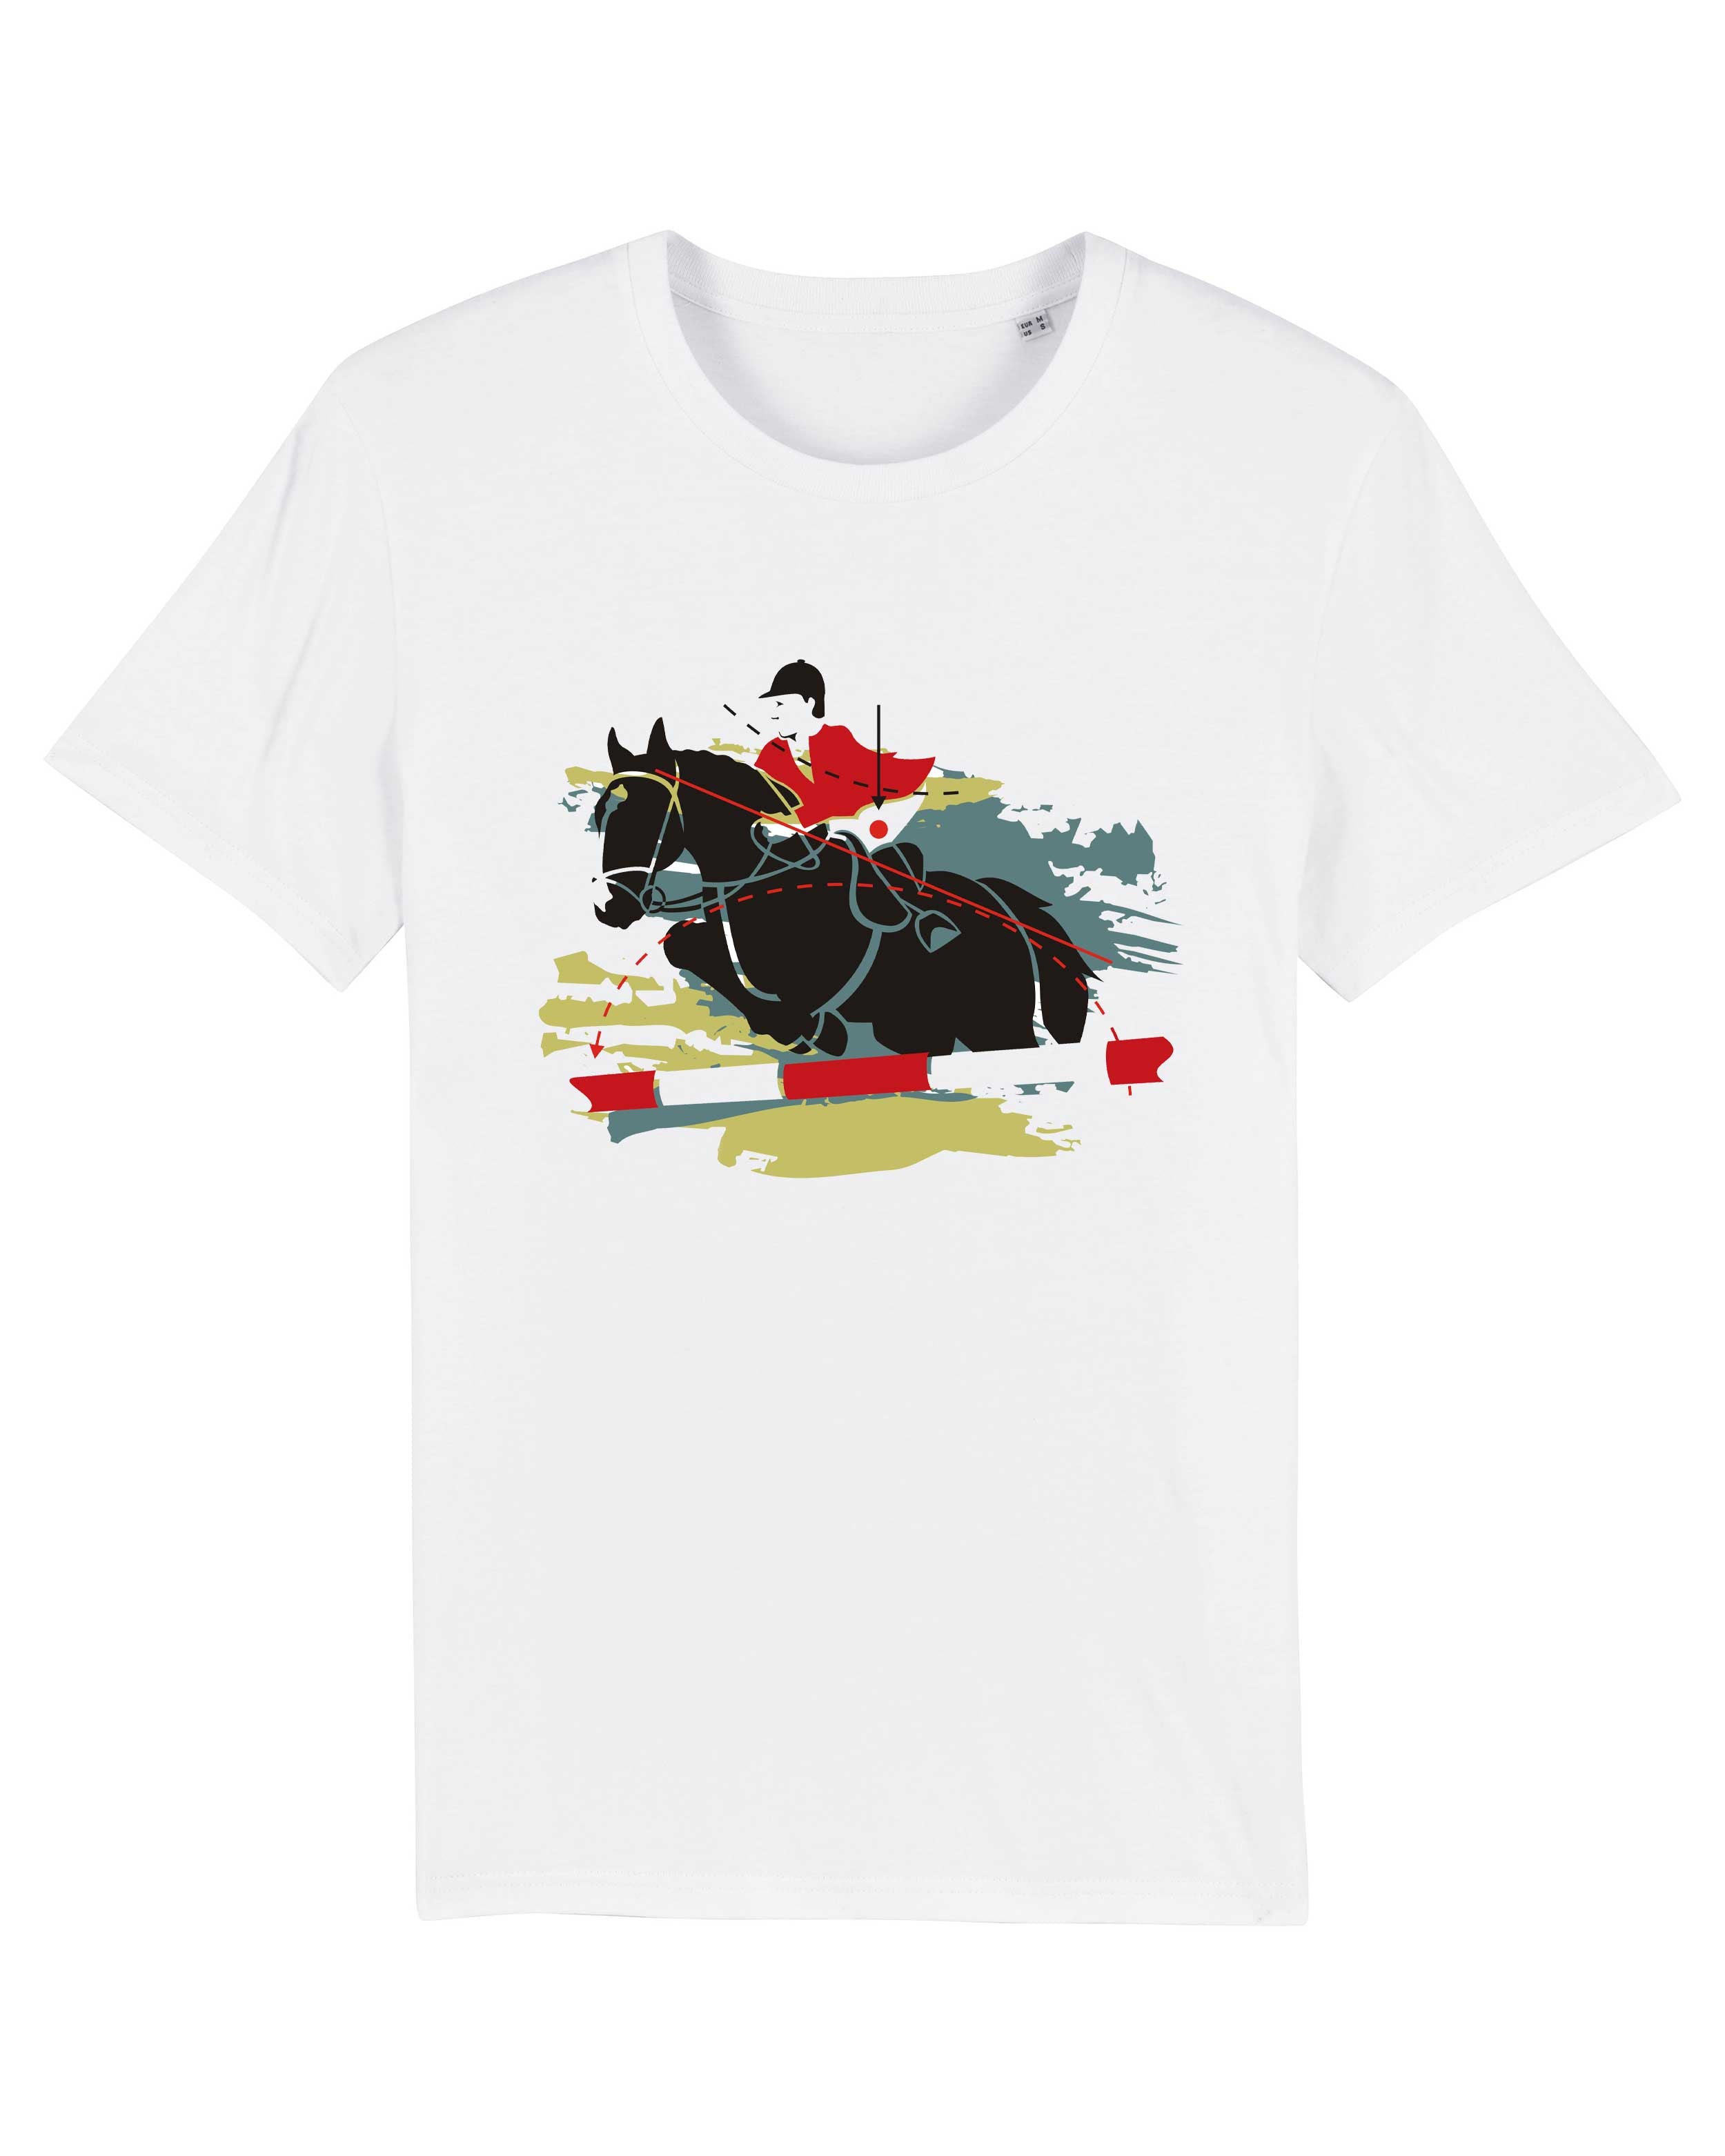 T-Shirt Springreiten Pferd, Bio-Baumwolle, Unisex, Damen, Kids